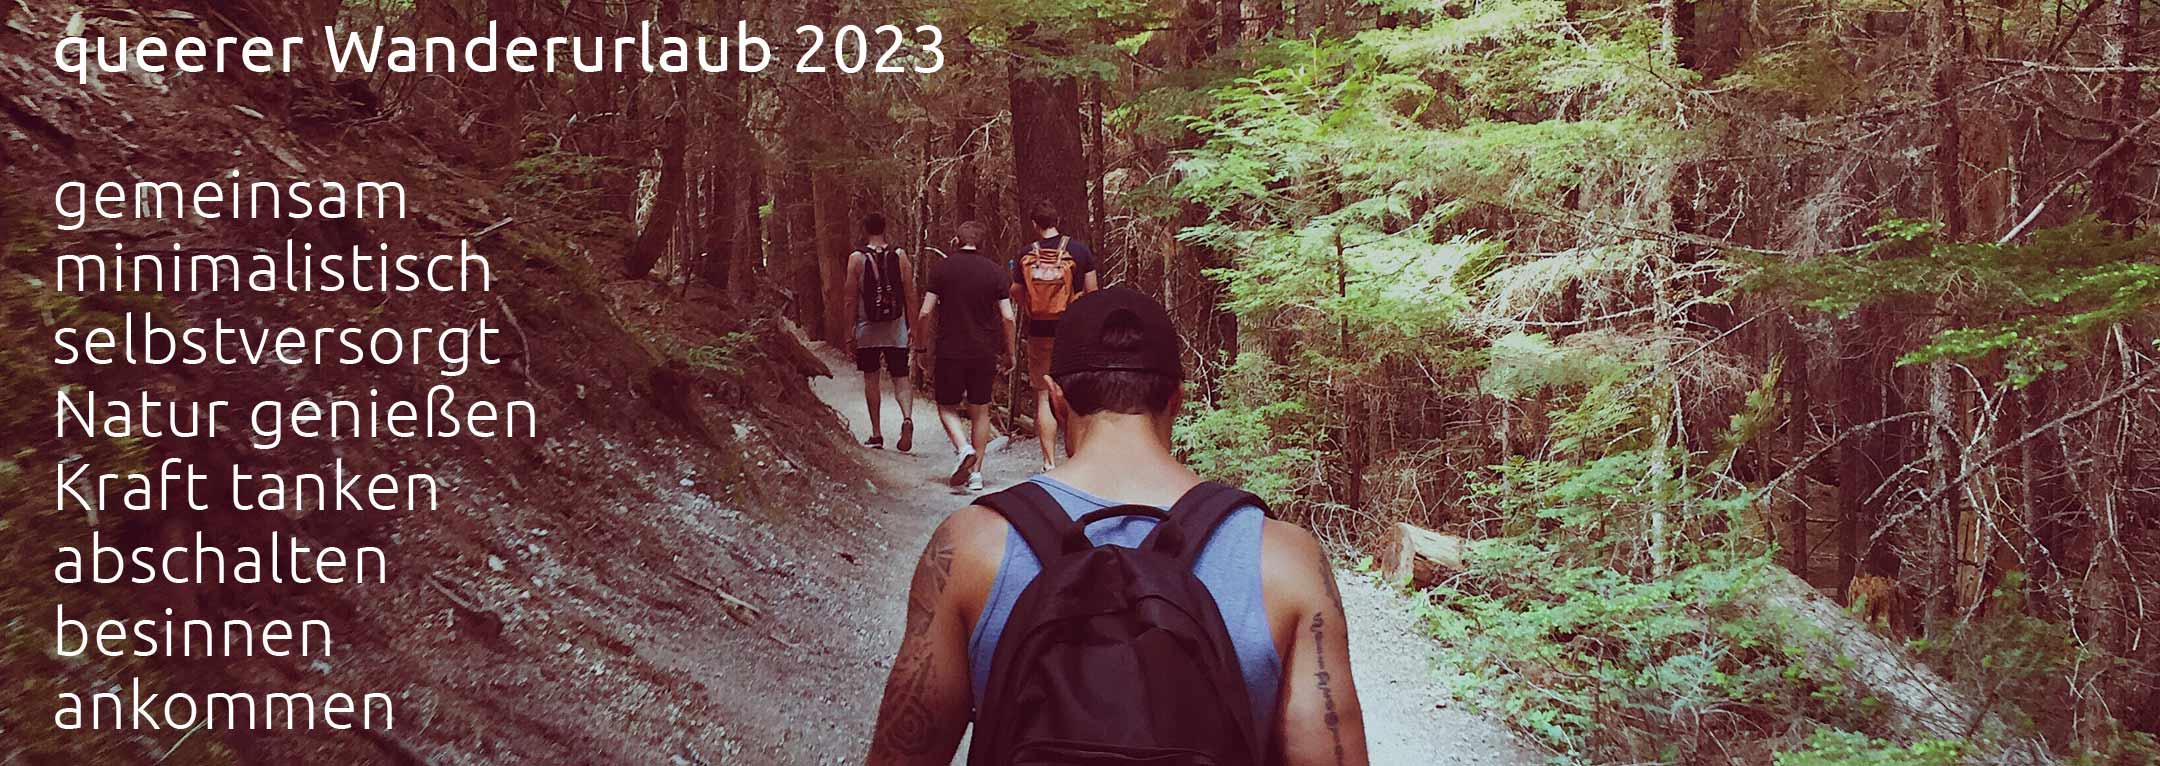 Slider Wandern, queerer Wanderurlaub 2023, gemeinsam minimalistisch zurückgezogen abschalten, besinnen, Kraft tanken, ankommen, Natur genießen, Yoga & Meditation